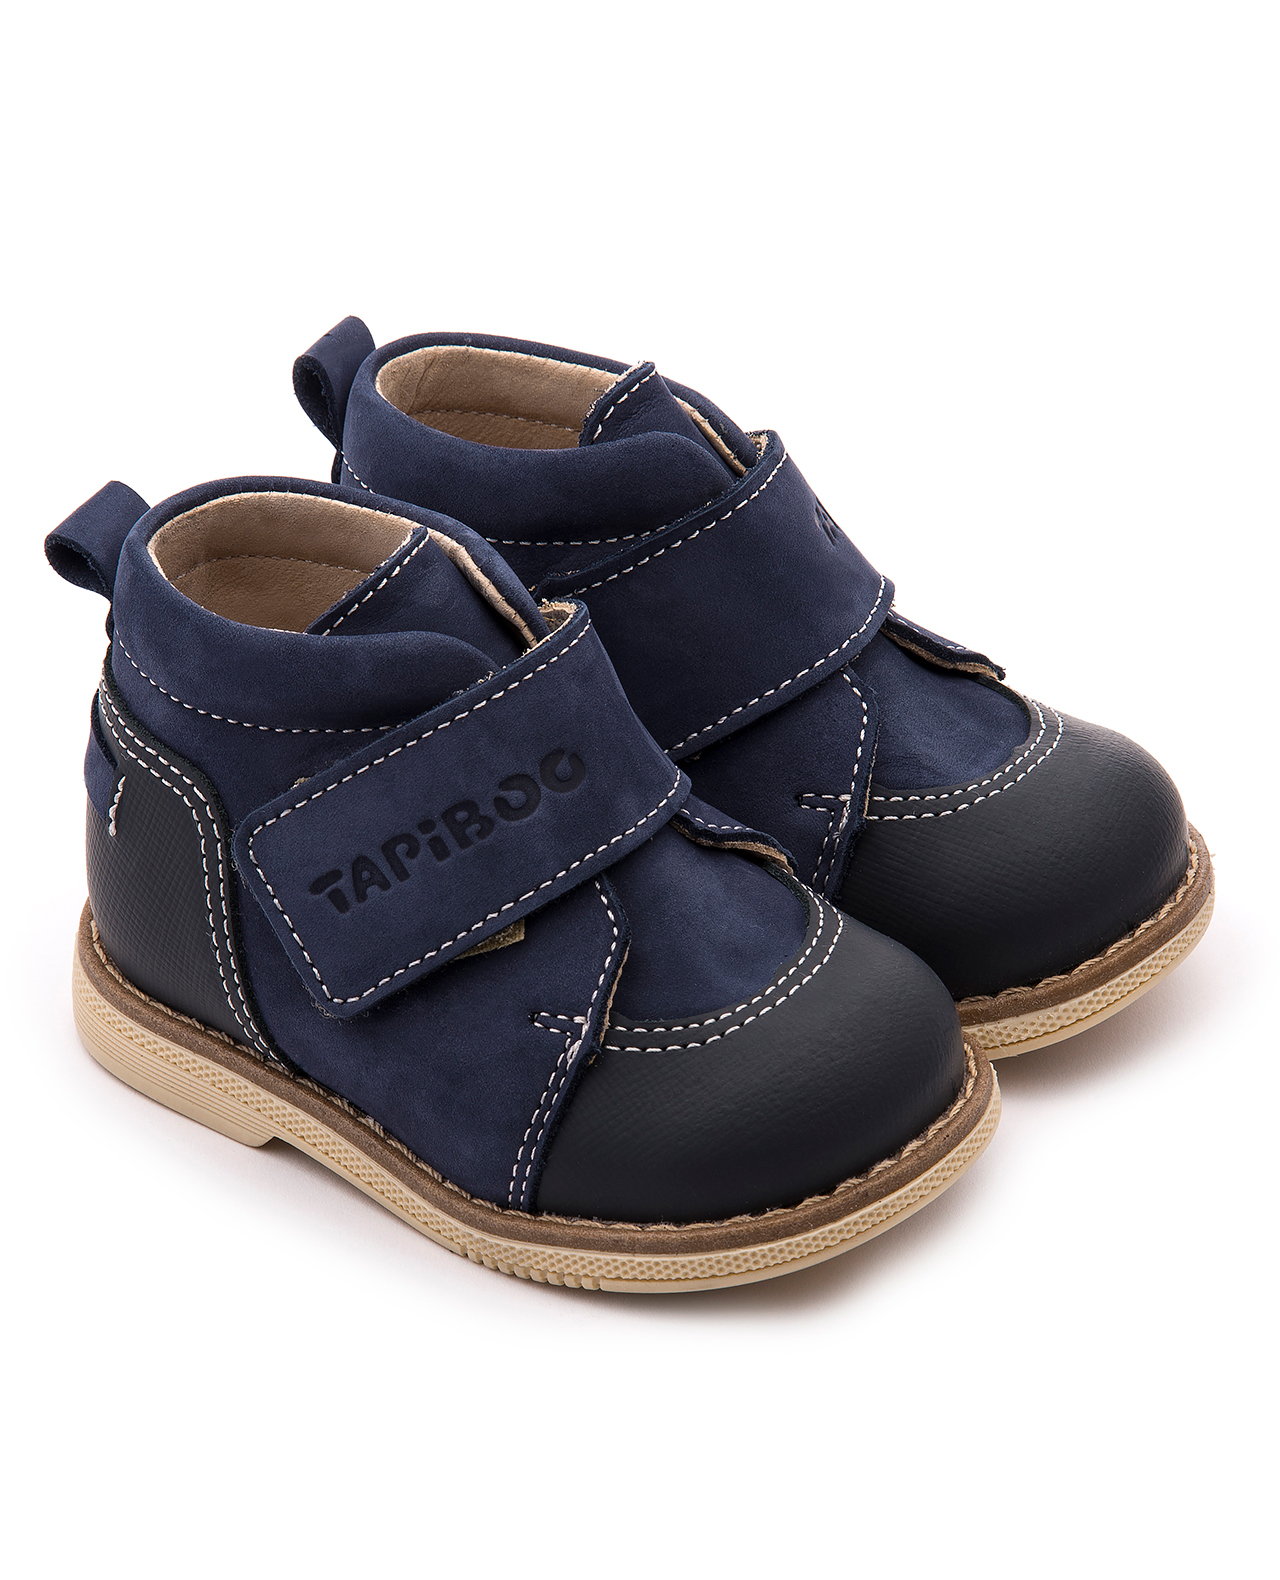 Ботинки Tapiboo FT-24015.18-OL08O.01 цв.тёмно-синий р.25 ботинки tapiboo ft 24015 18 ol08o 01 цв тёмно синий р 25